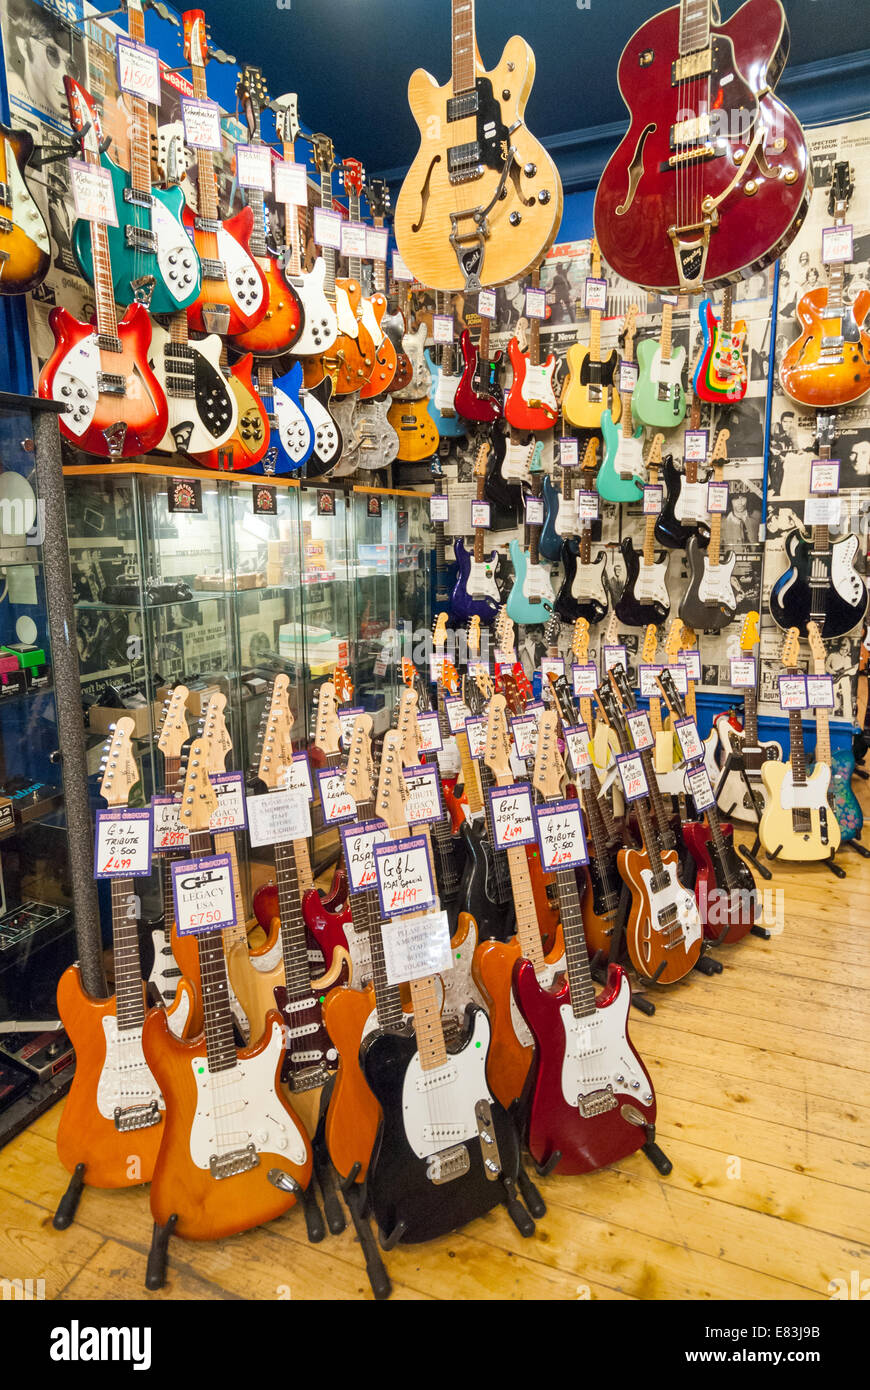 E-Gitarren in Andys Gitarre Laden in Dänemark Street, London, England, UK  Stockfotografie - Alamy